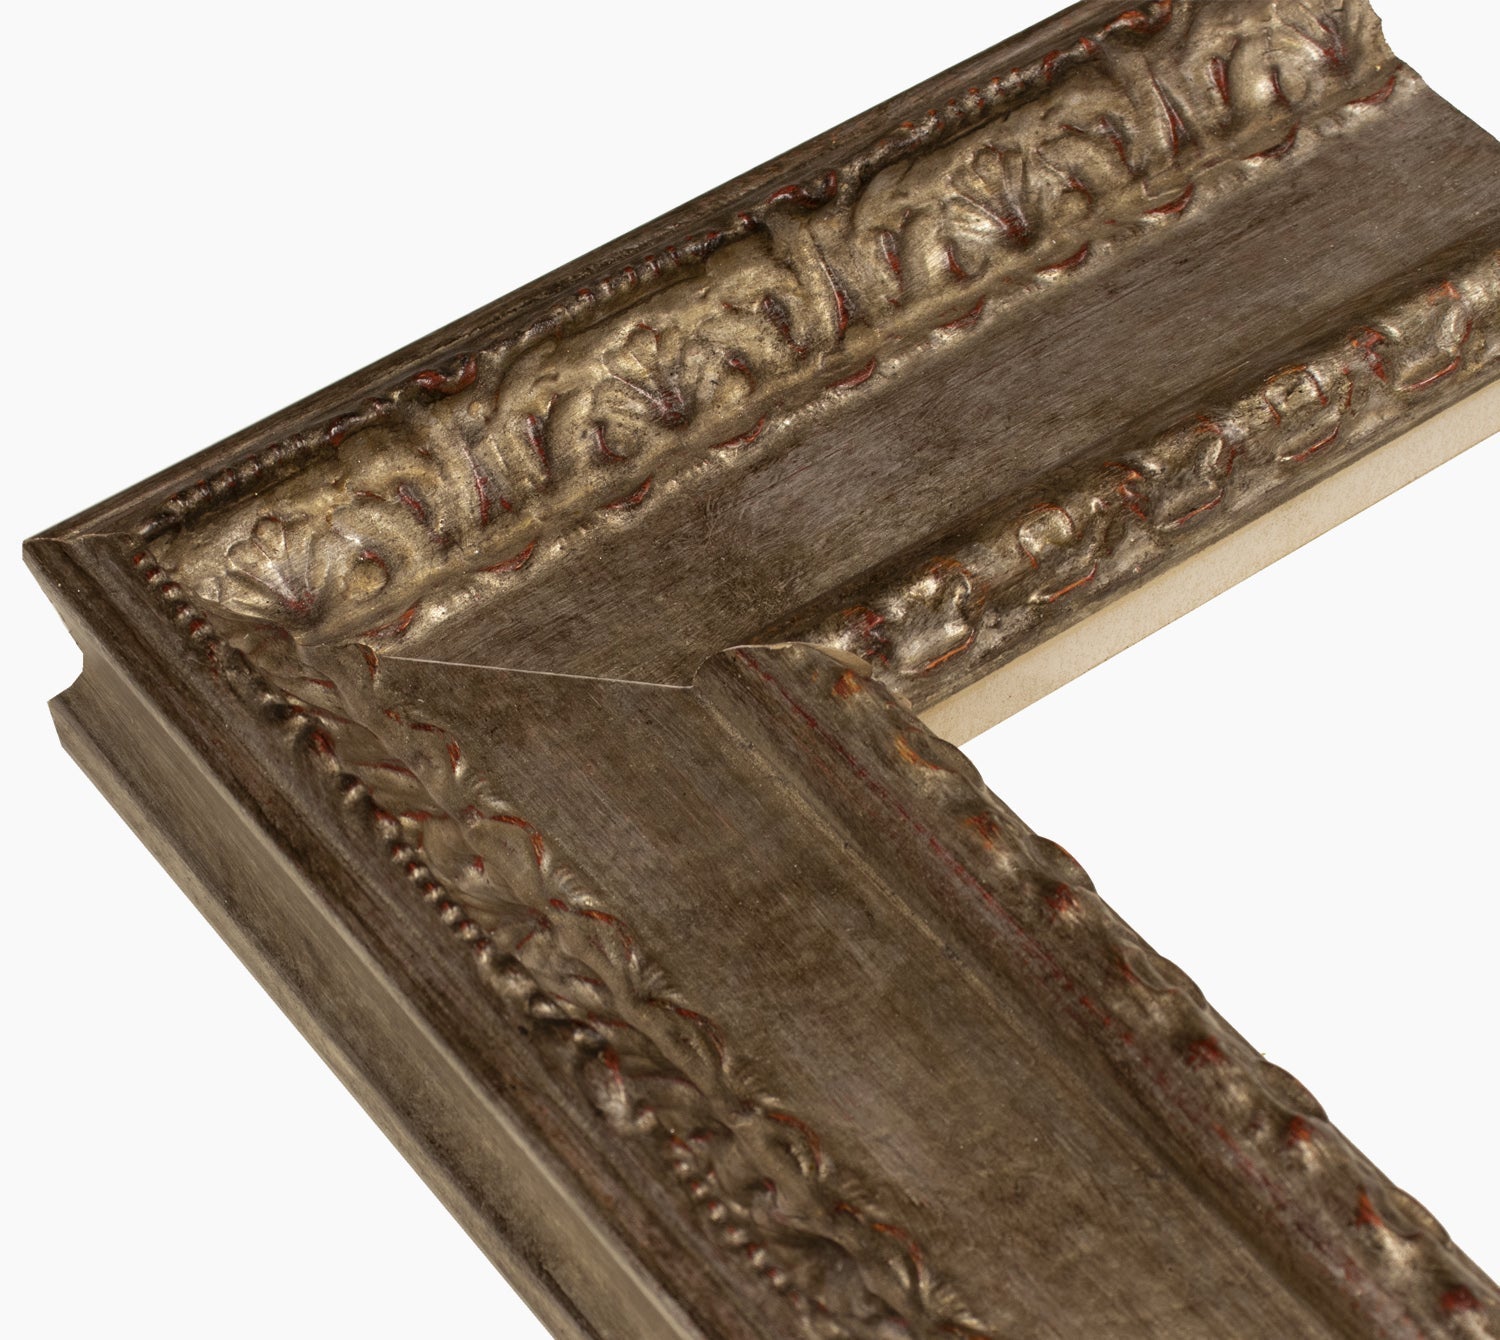 743.231 cadre en bois à la feuille d'argent antique mesure de profil 100x53 mm Lombarda cornici S.n.c.